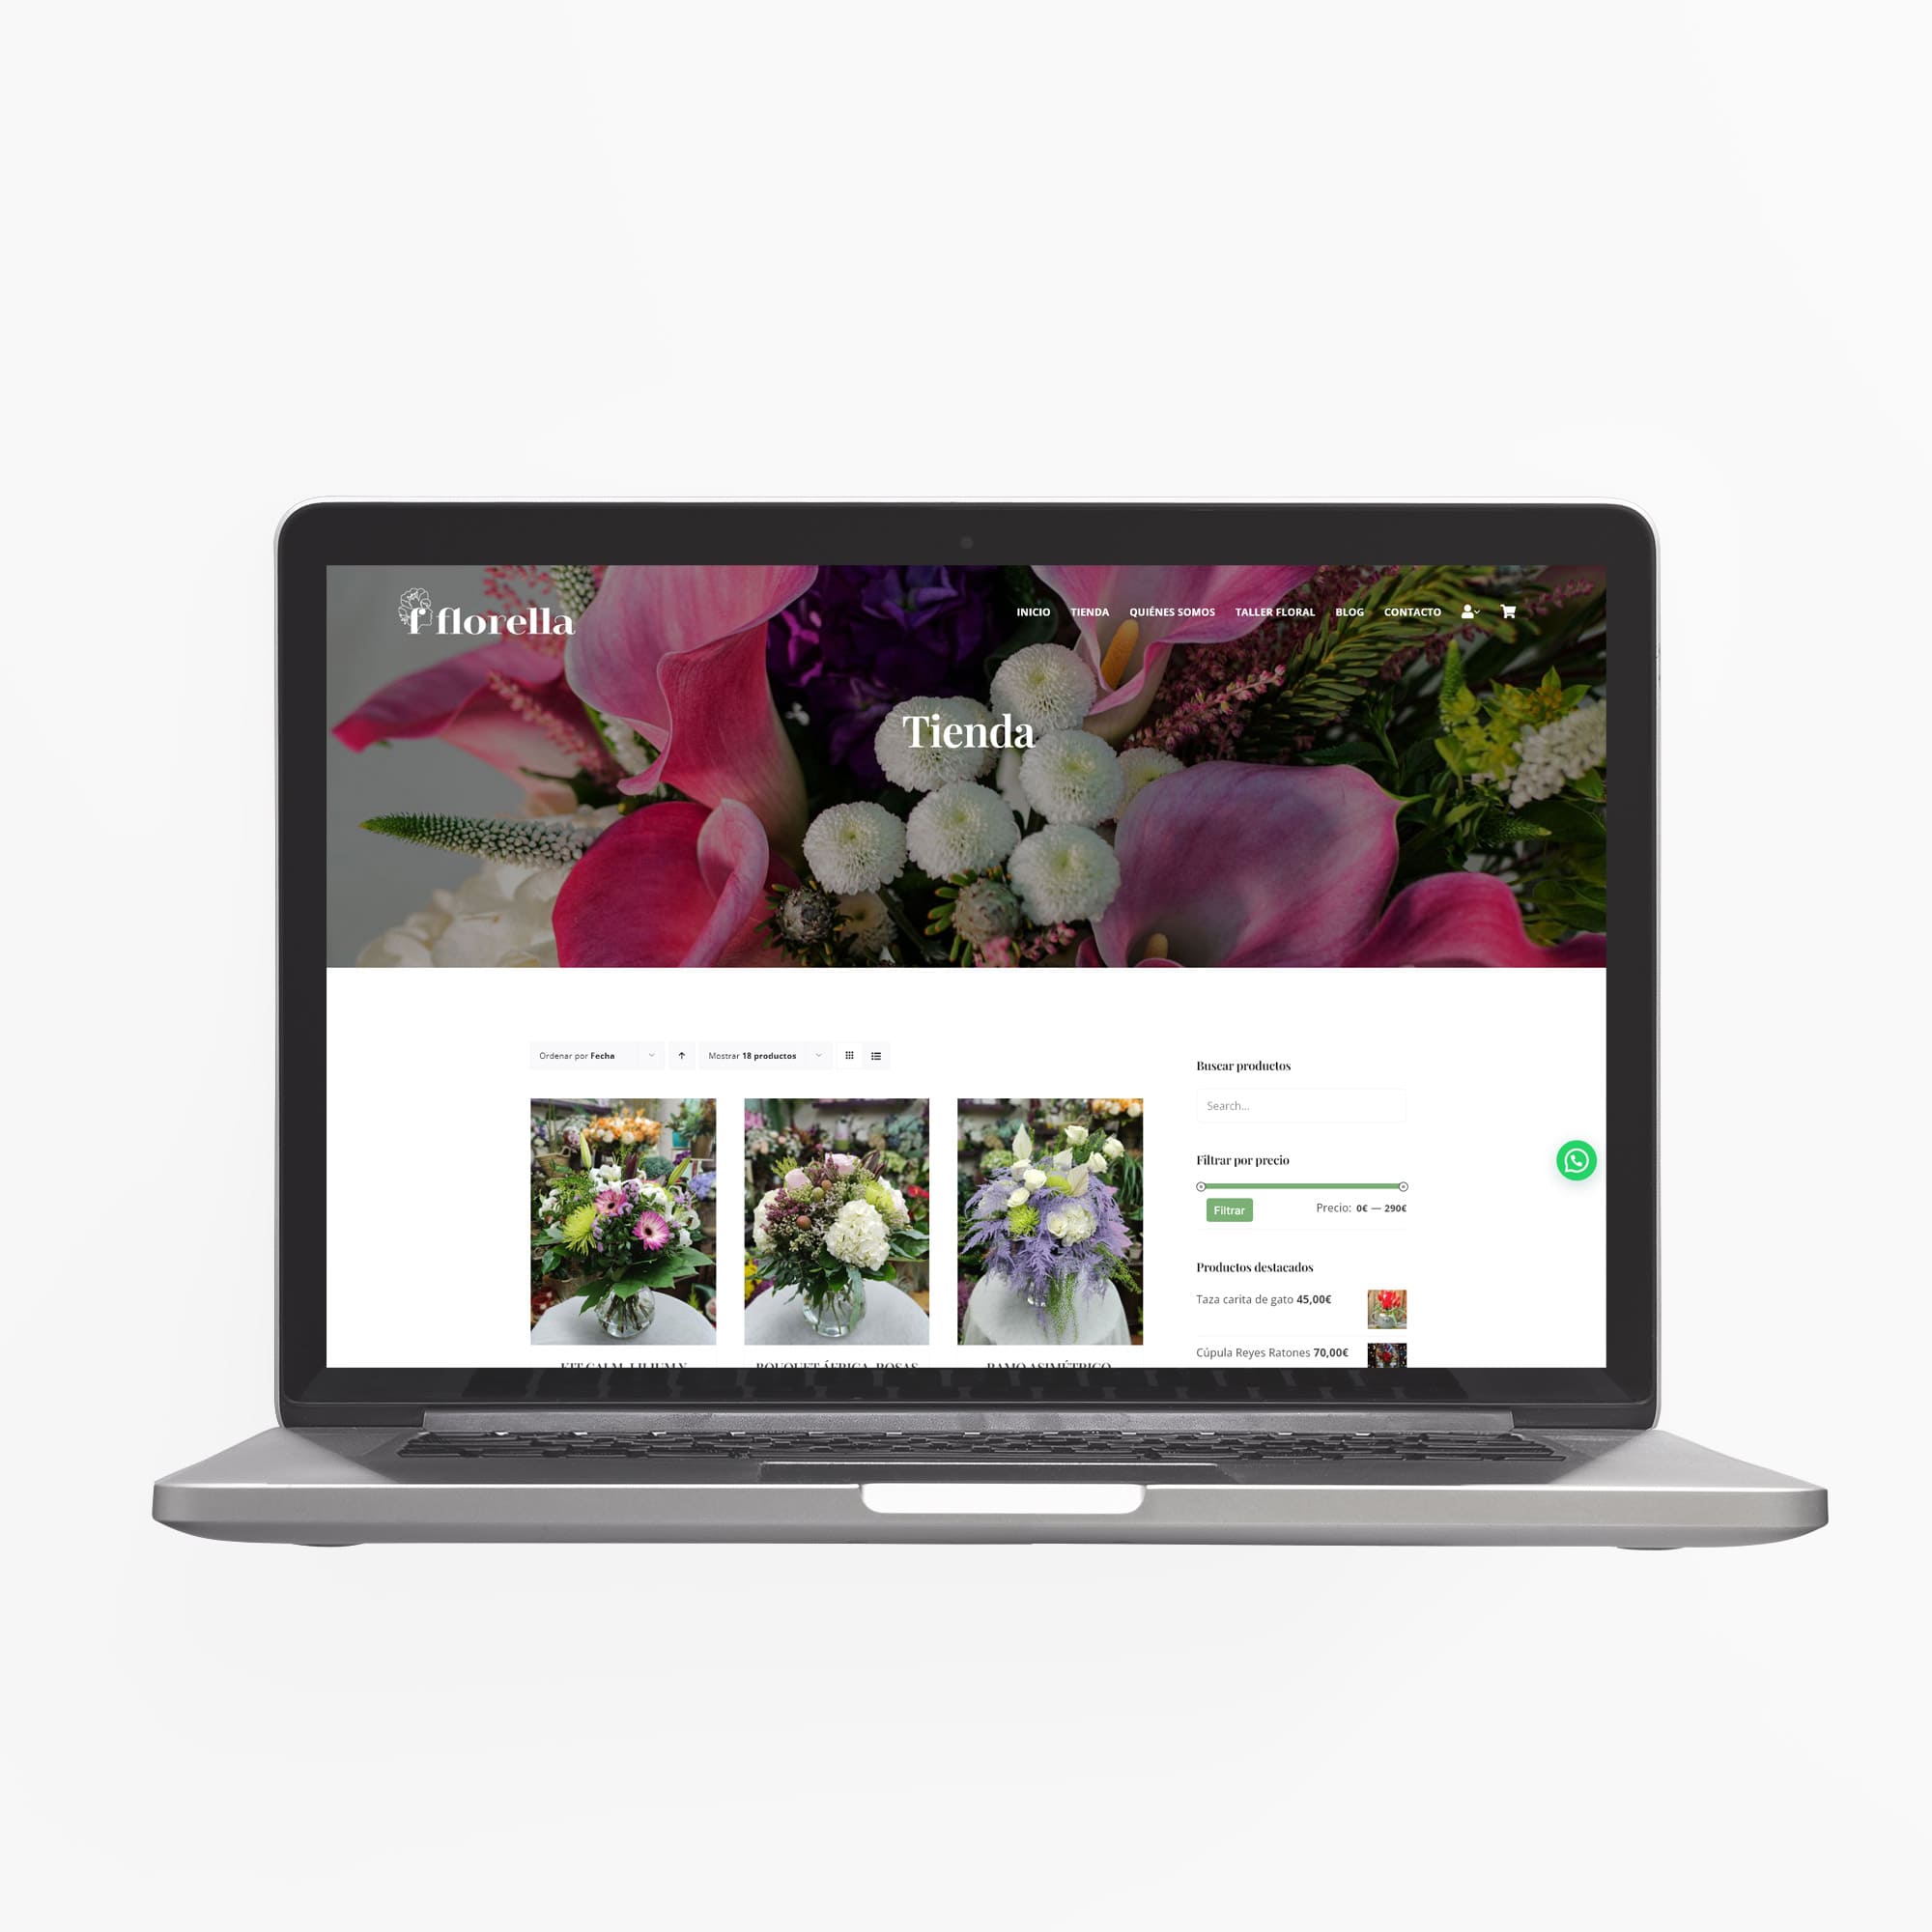 Florella Alegría Floral, floristería online con tienda física en Mieres. Diseño del catálogo de productos versión escritorio